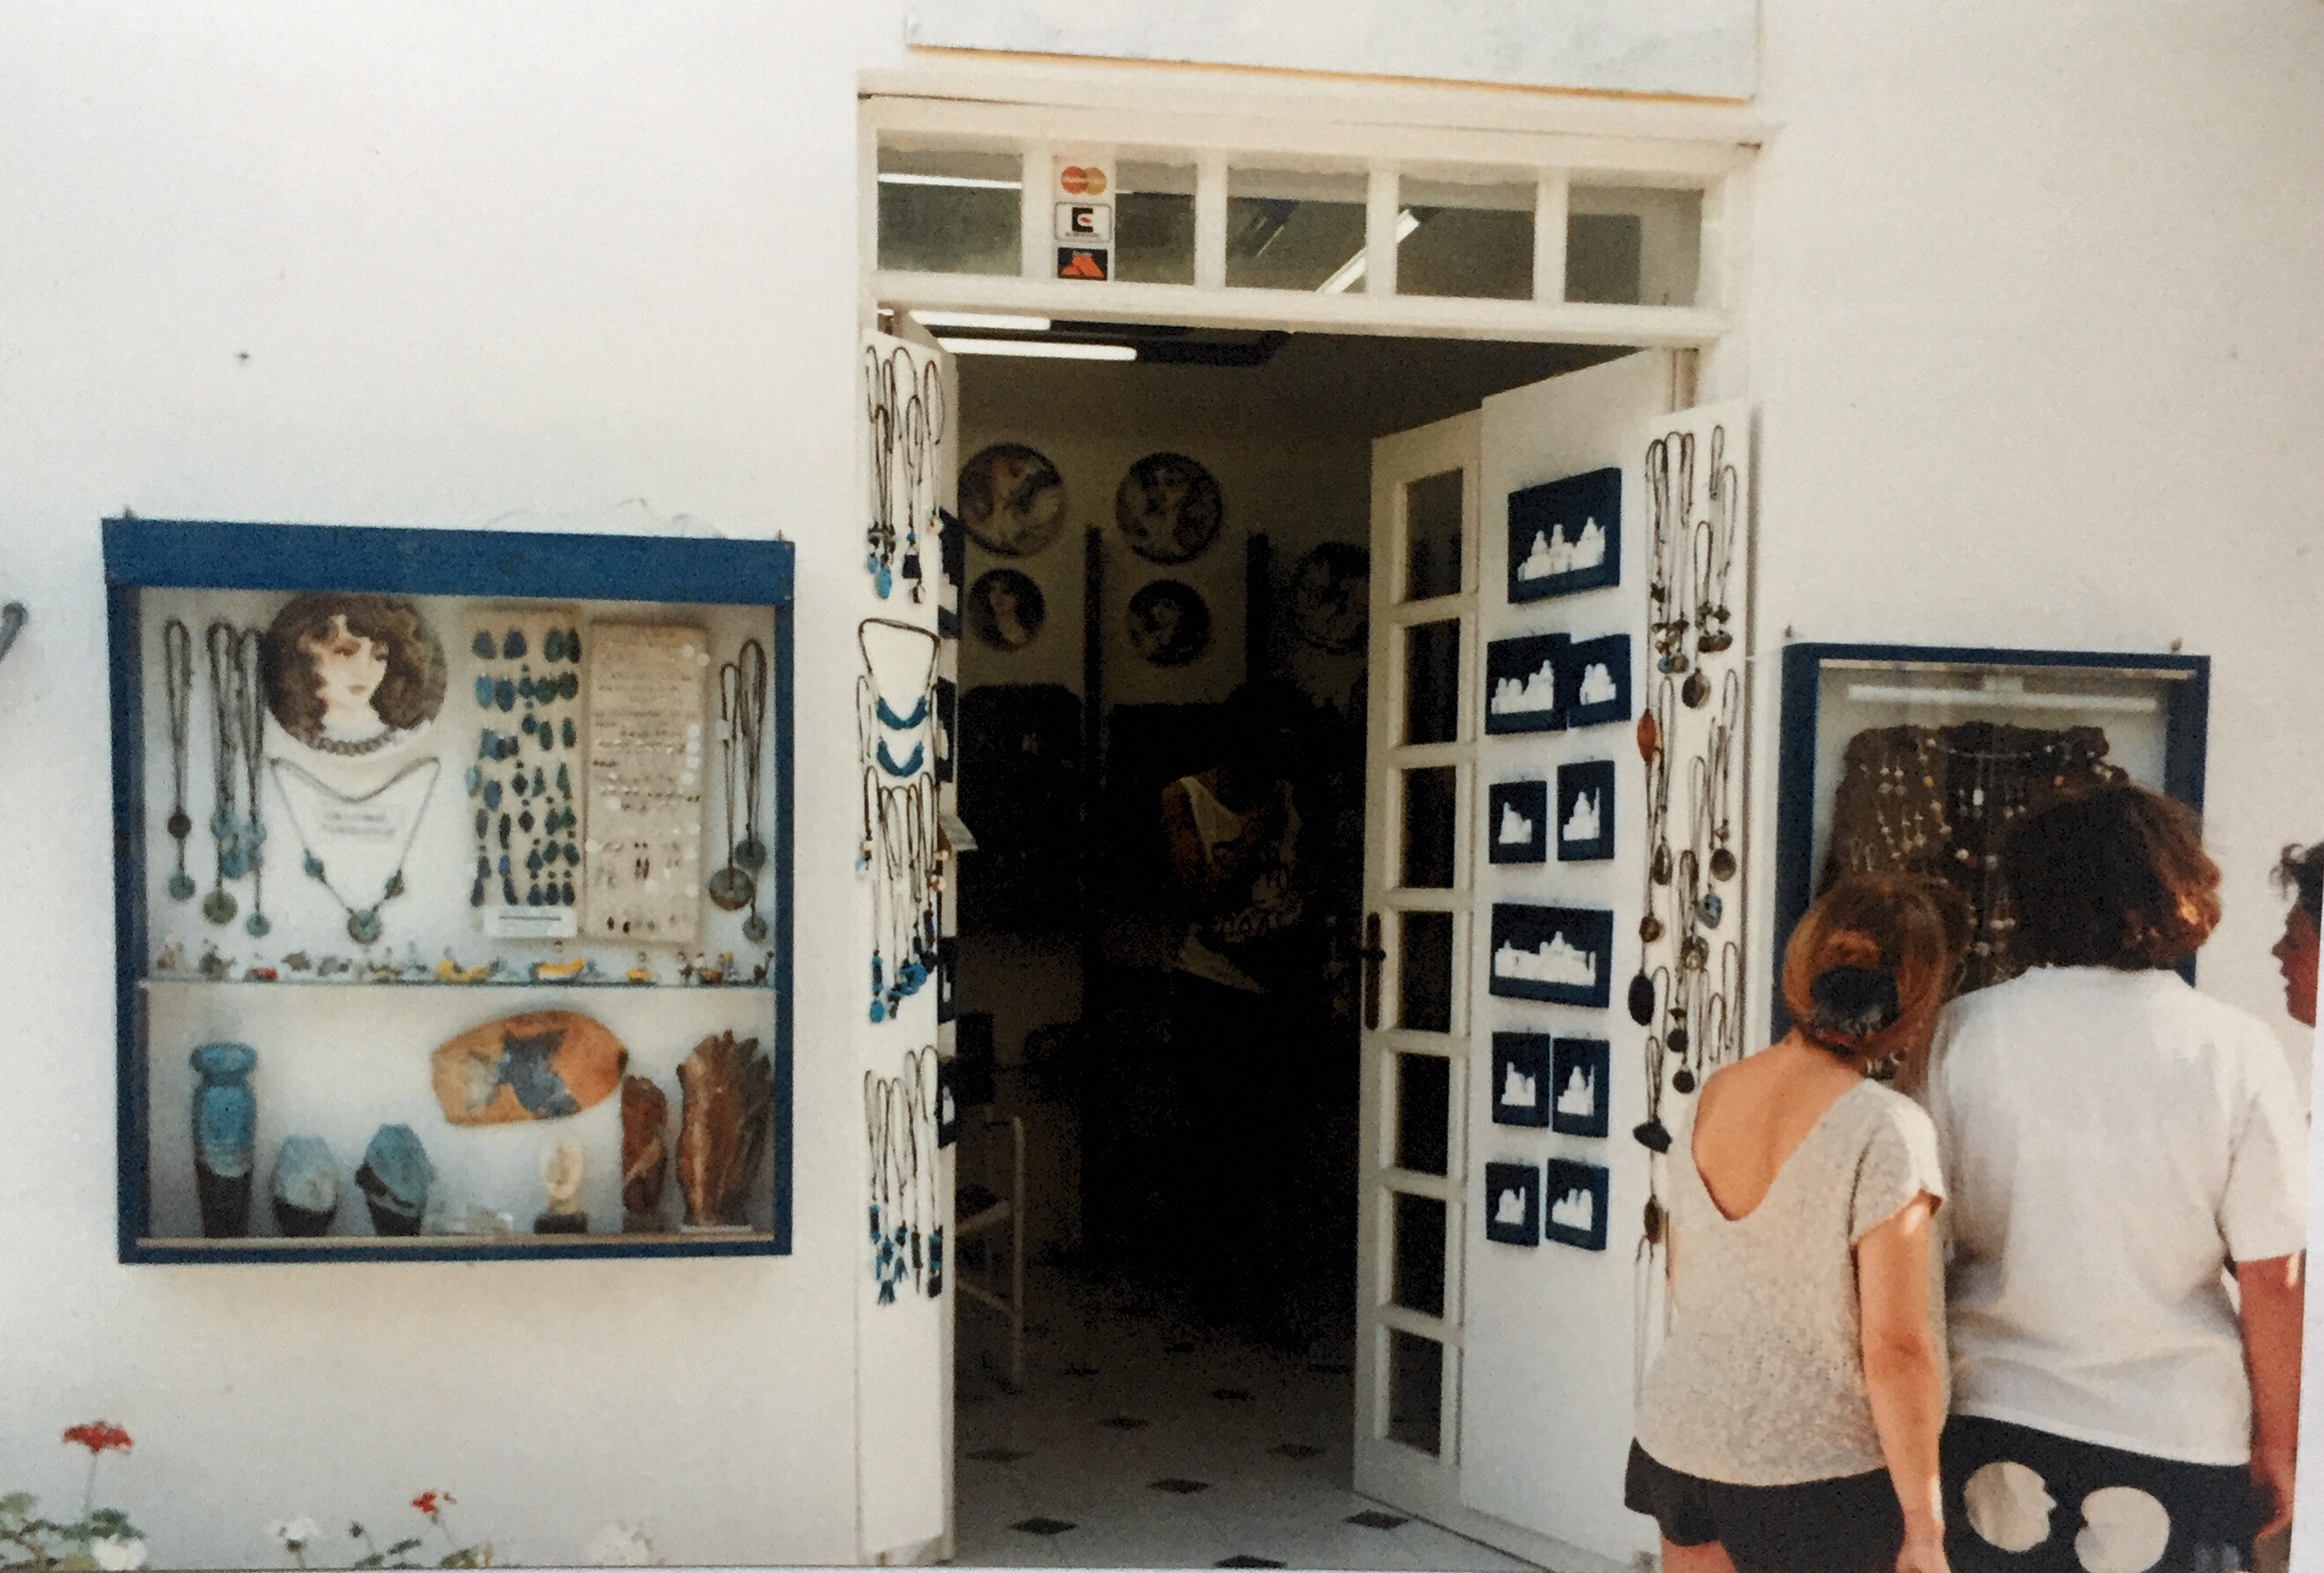 Souvenurbutikk, Paros,Hellas 1992.